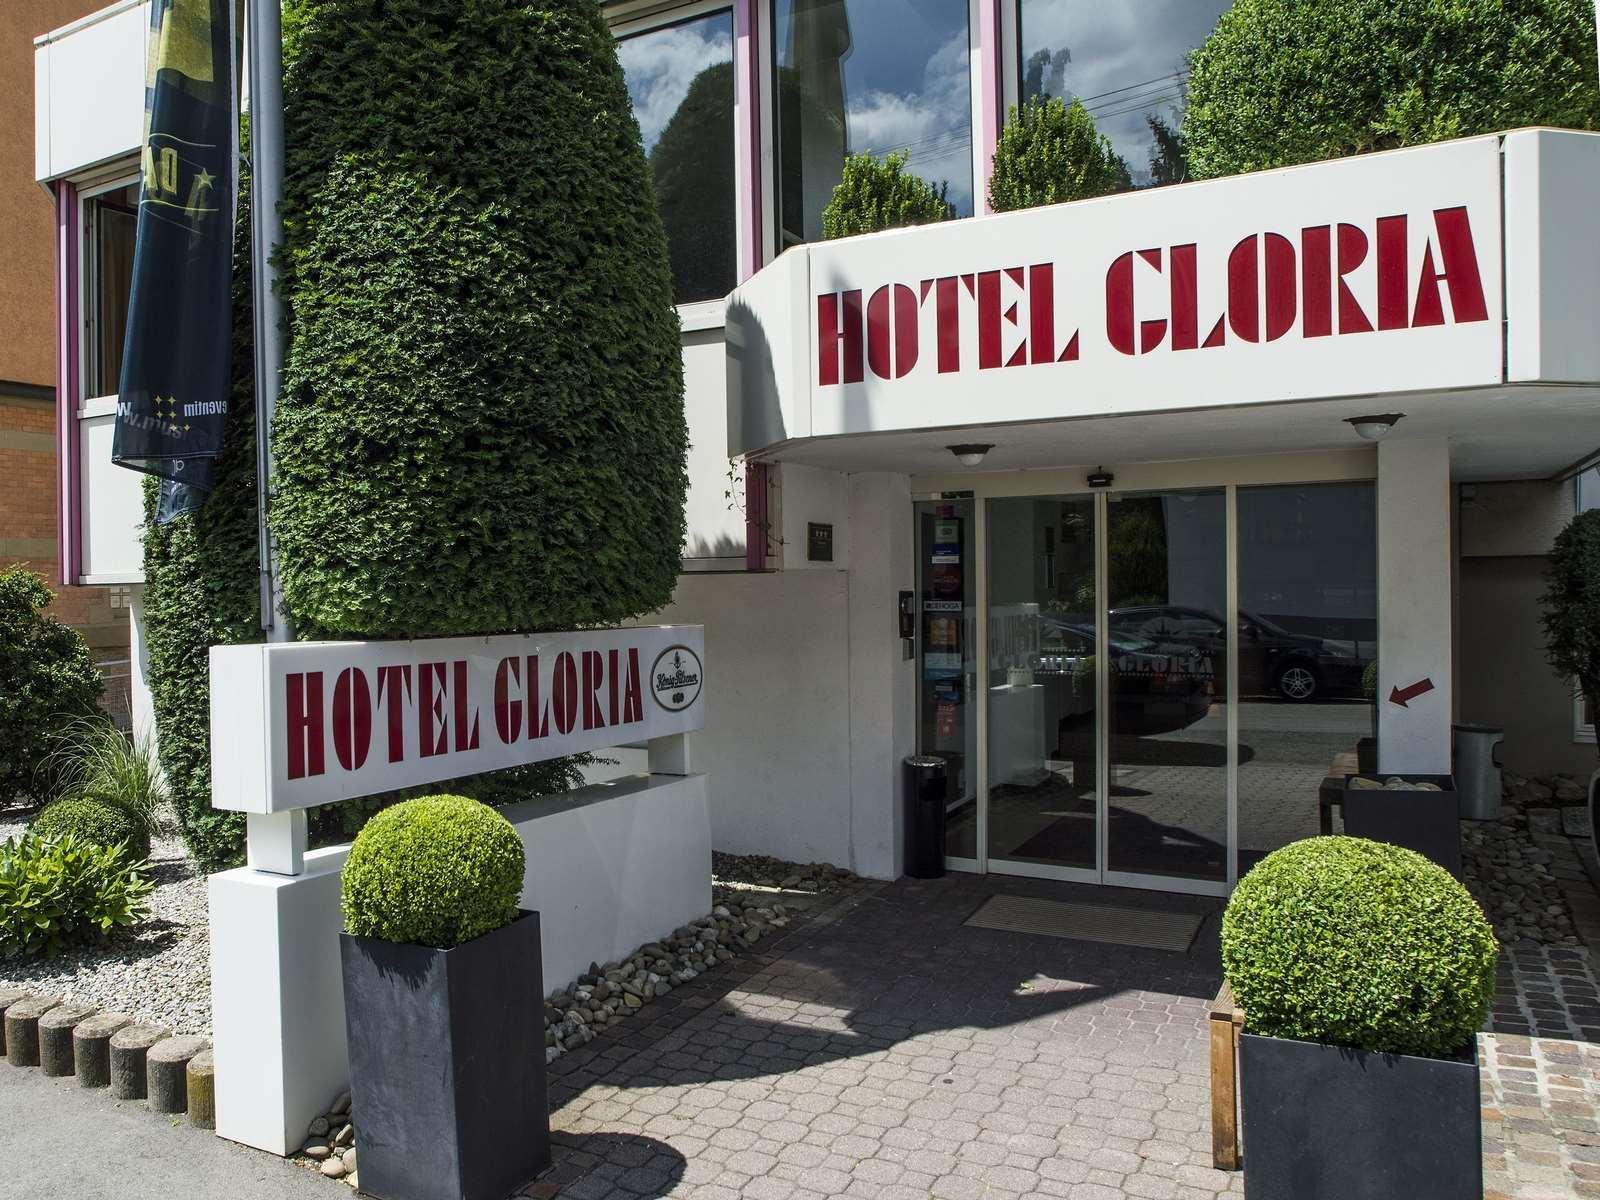 Hotel Gloria - Bild 1